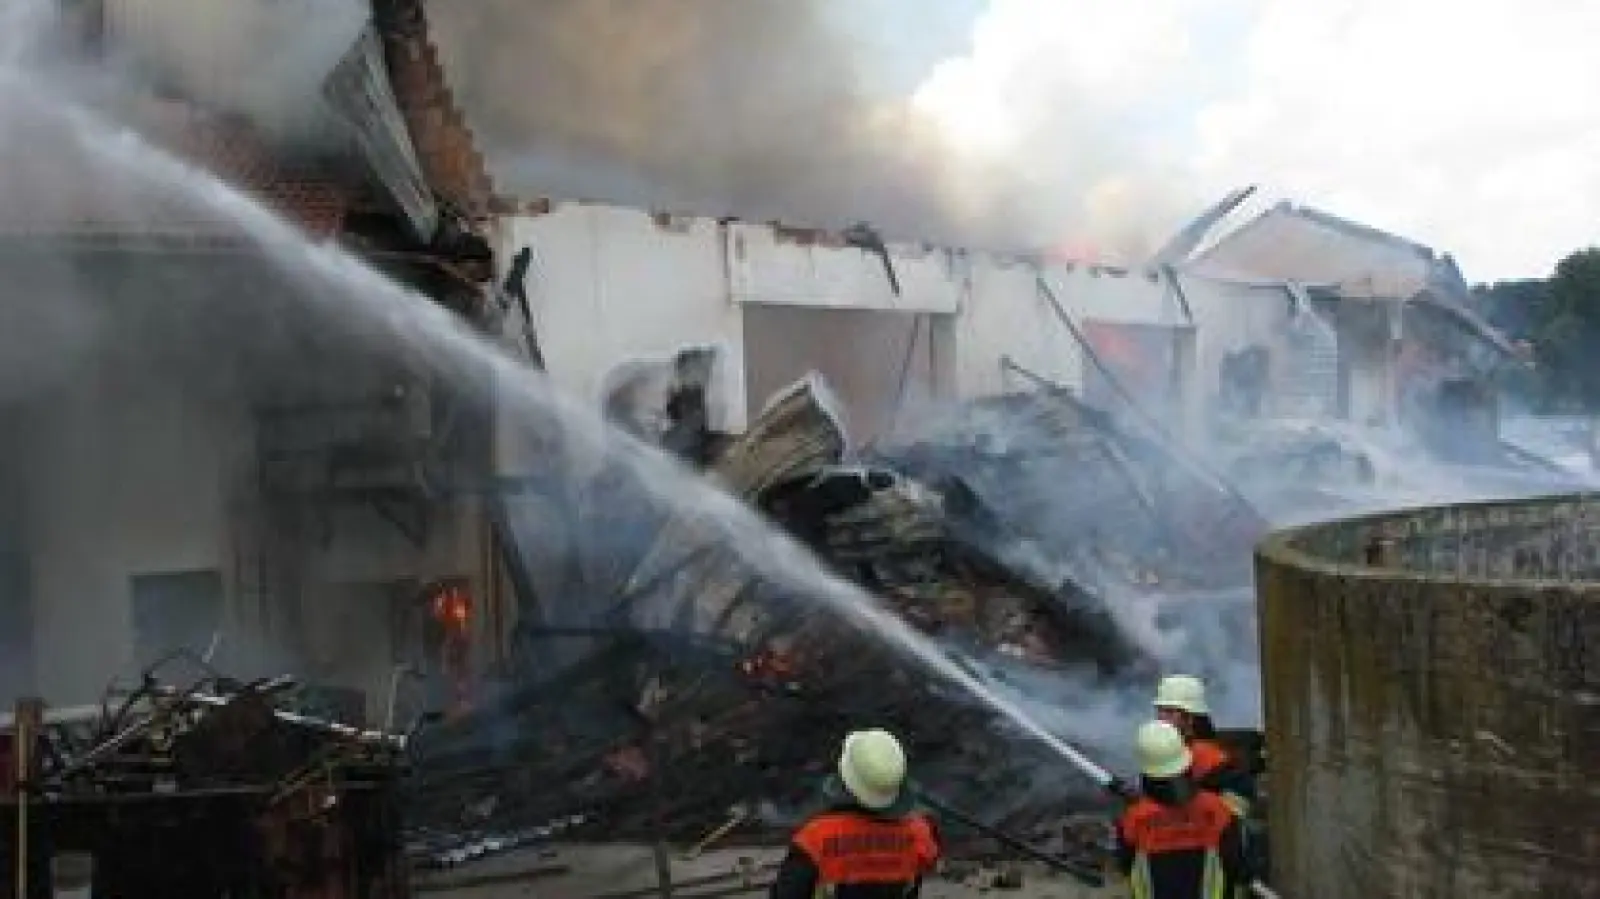 Mehrere hunderttausend Euro Sachschaden entstanden heute Mittag bei diesem Brand in Sielenbach.